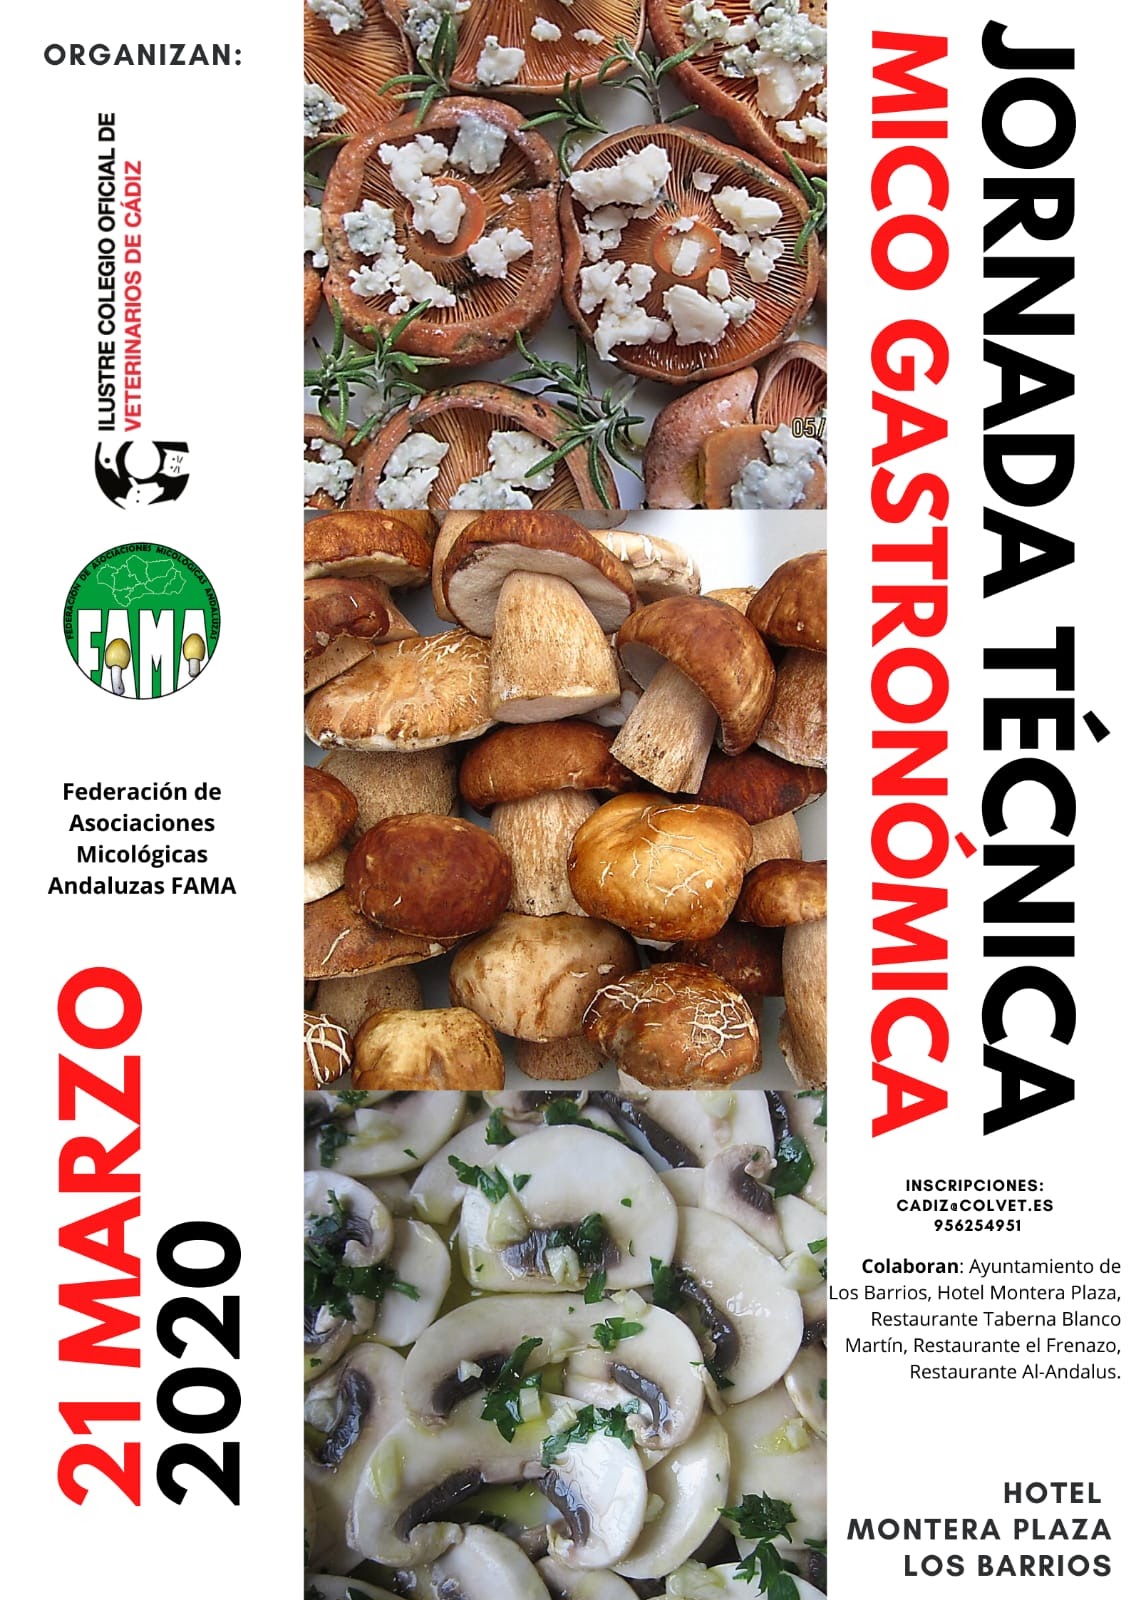 El Colegio de Cádiz promueve la I Jornada Técnica Mico Gastronómica, prevista para el día 21 en Los Barrios